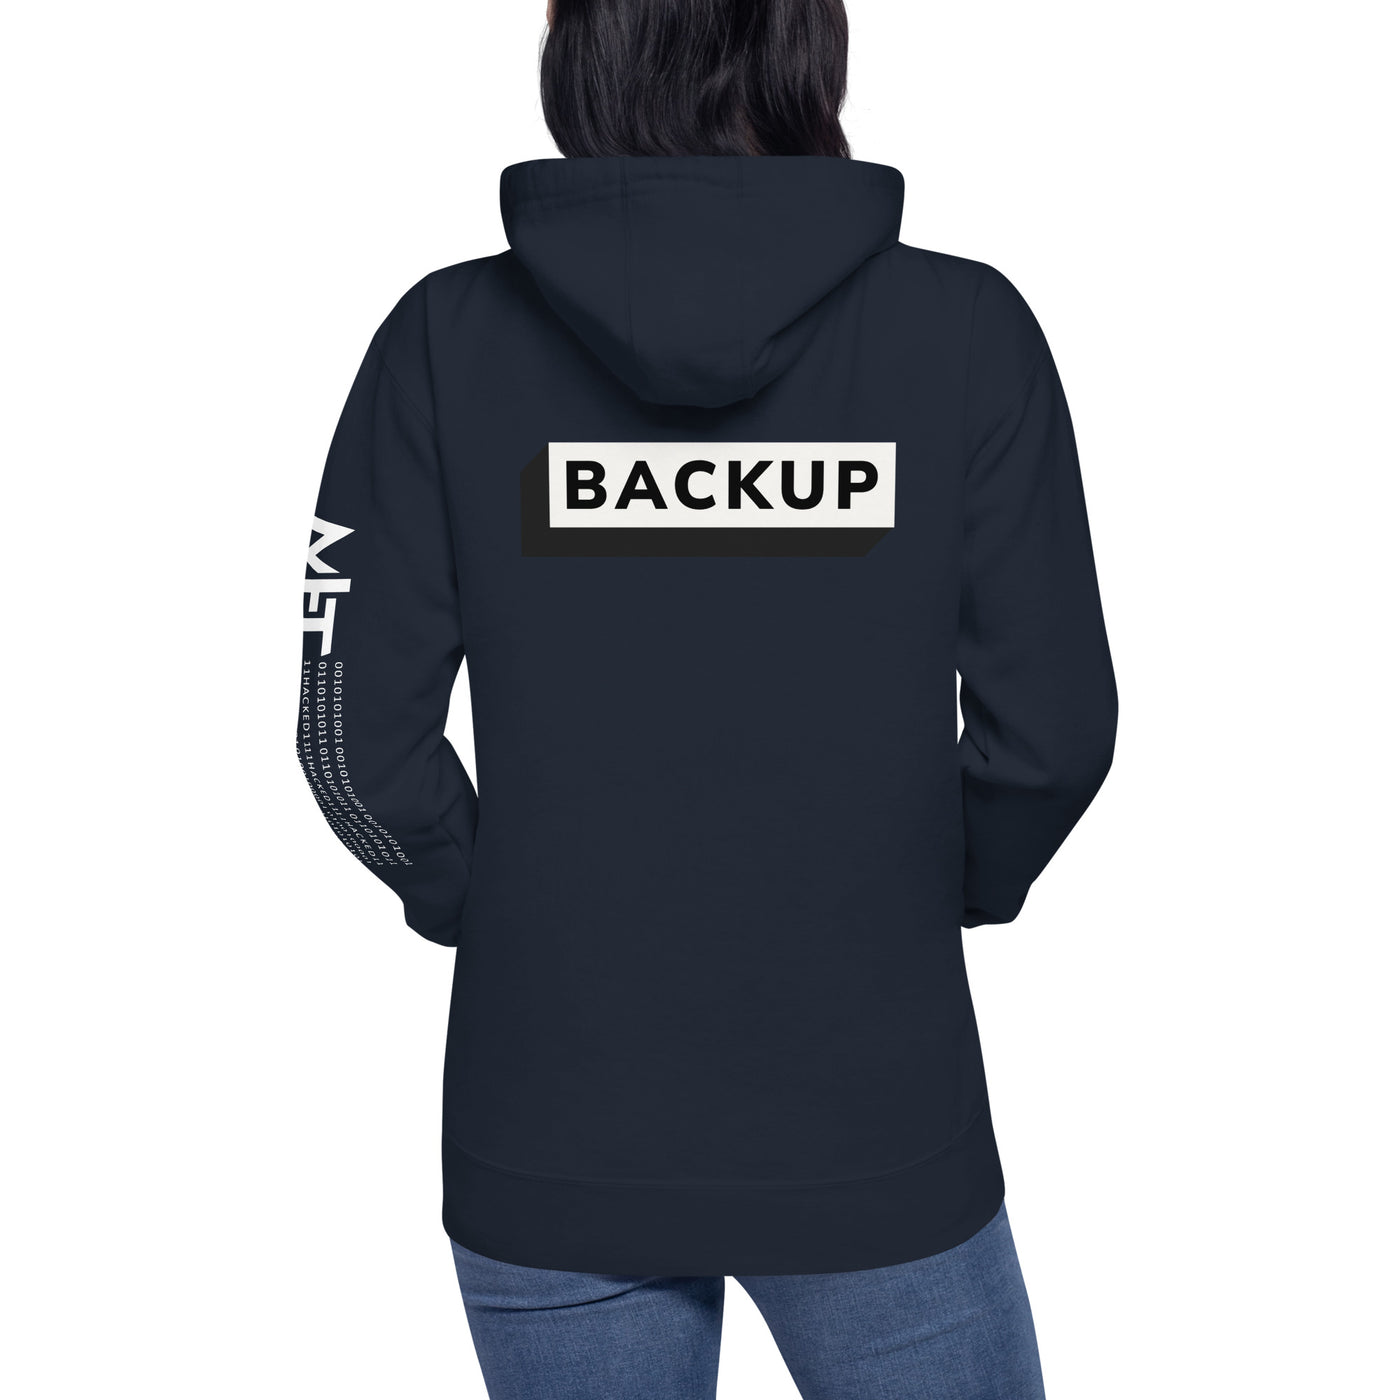 Backup - Unisex Hoodie (back print)